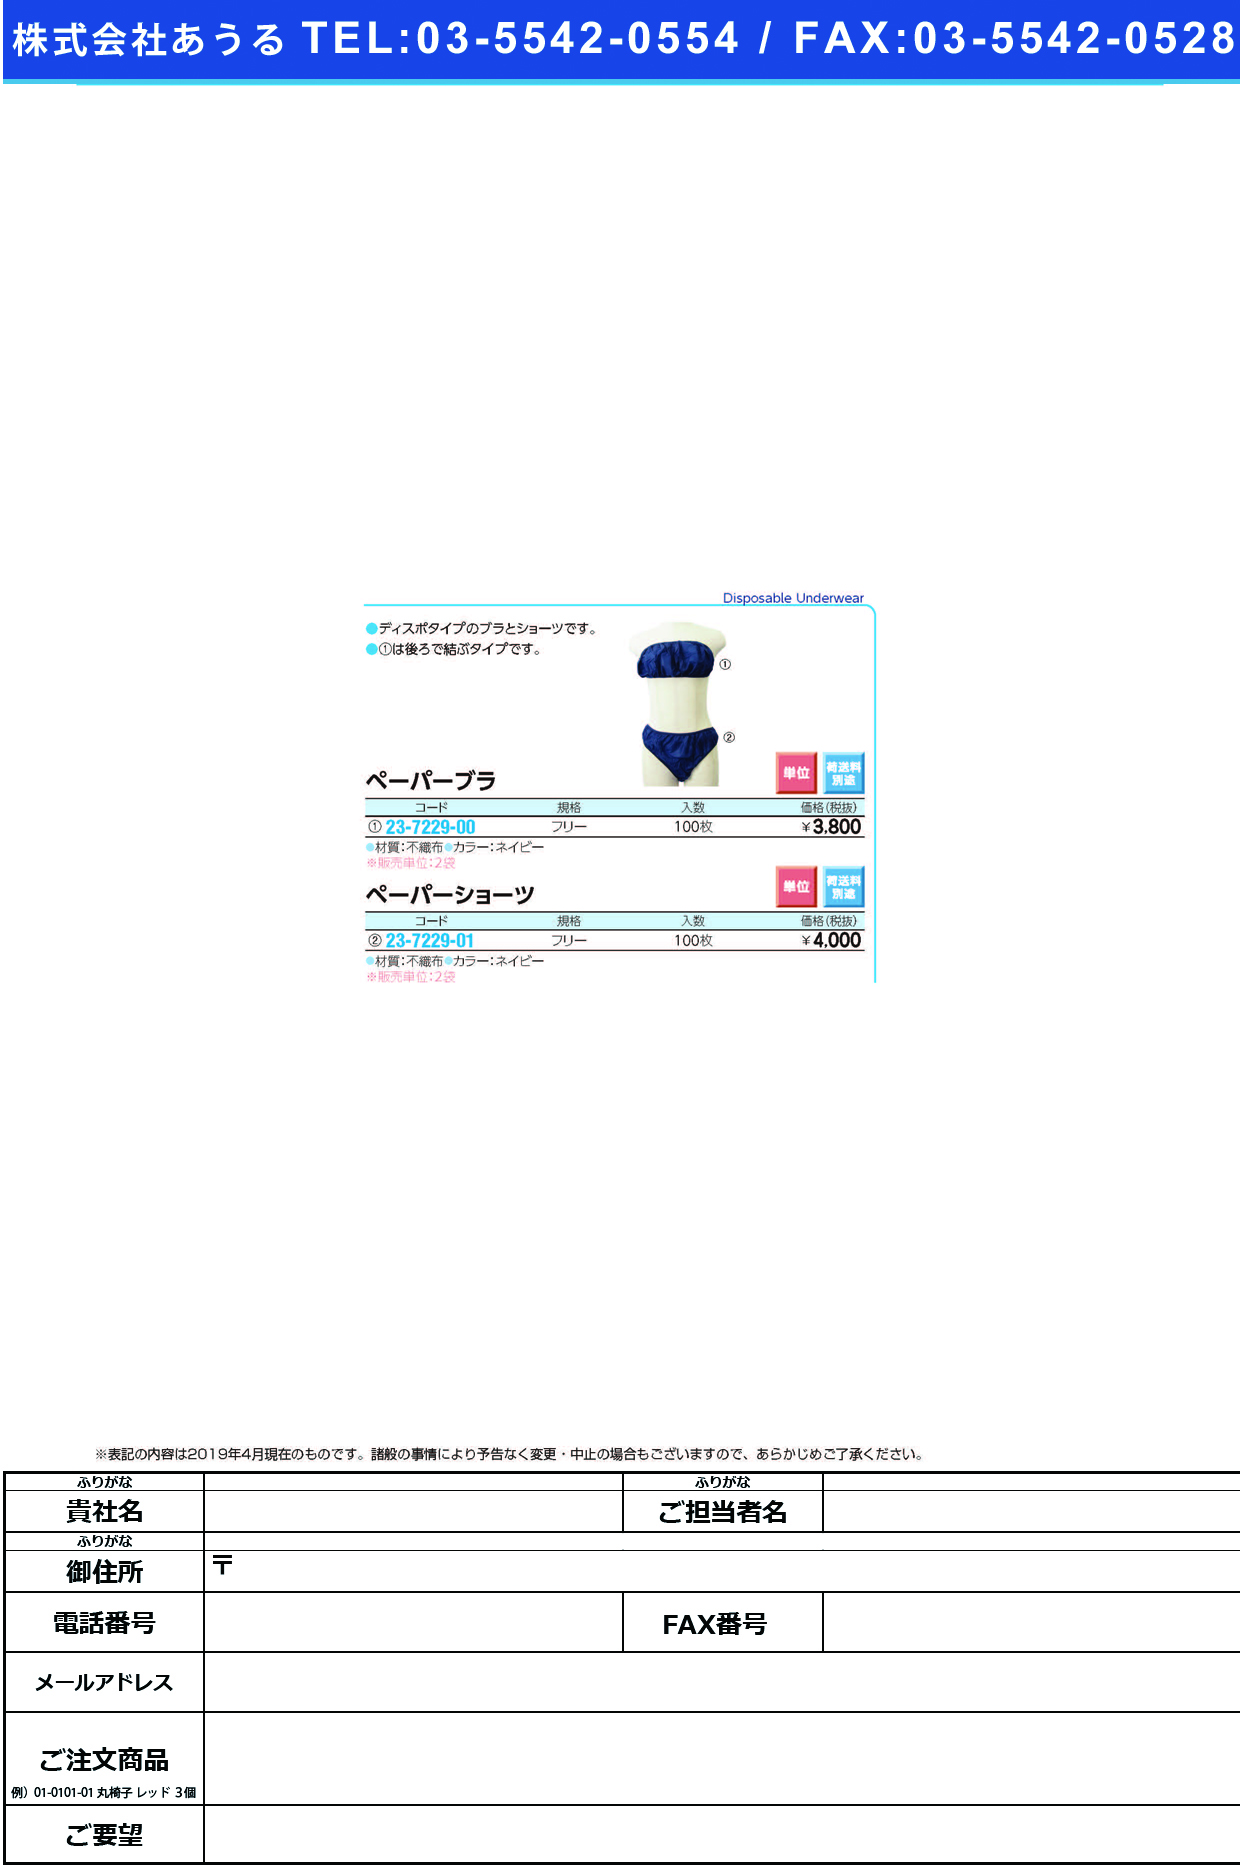 (23-7229-01)ペーパーショーツ ﾈｲﾋﾞｰ(100ﾏｲｲﾘ) ﾍﾟｰﾊﾟｰｼｮｰﾂ【2袋単位】【2019年カタログ商品】